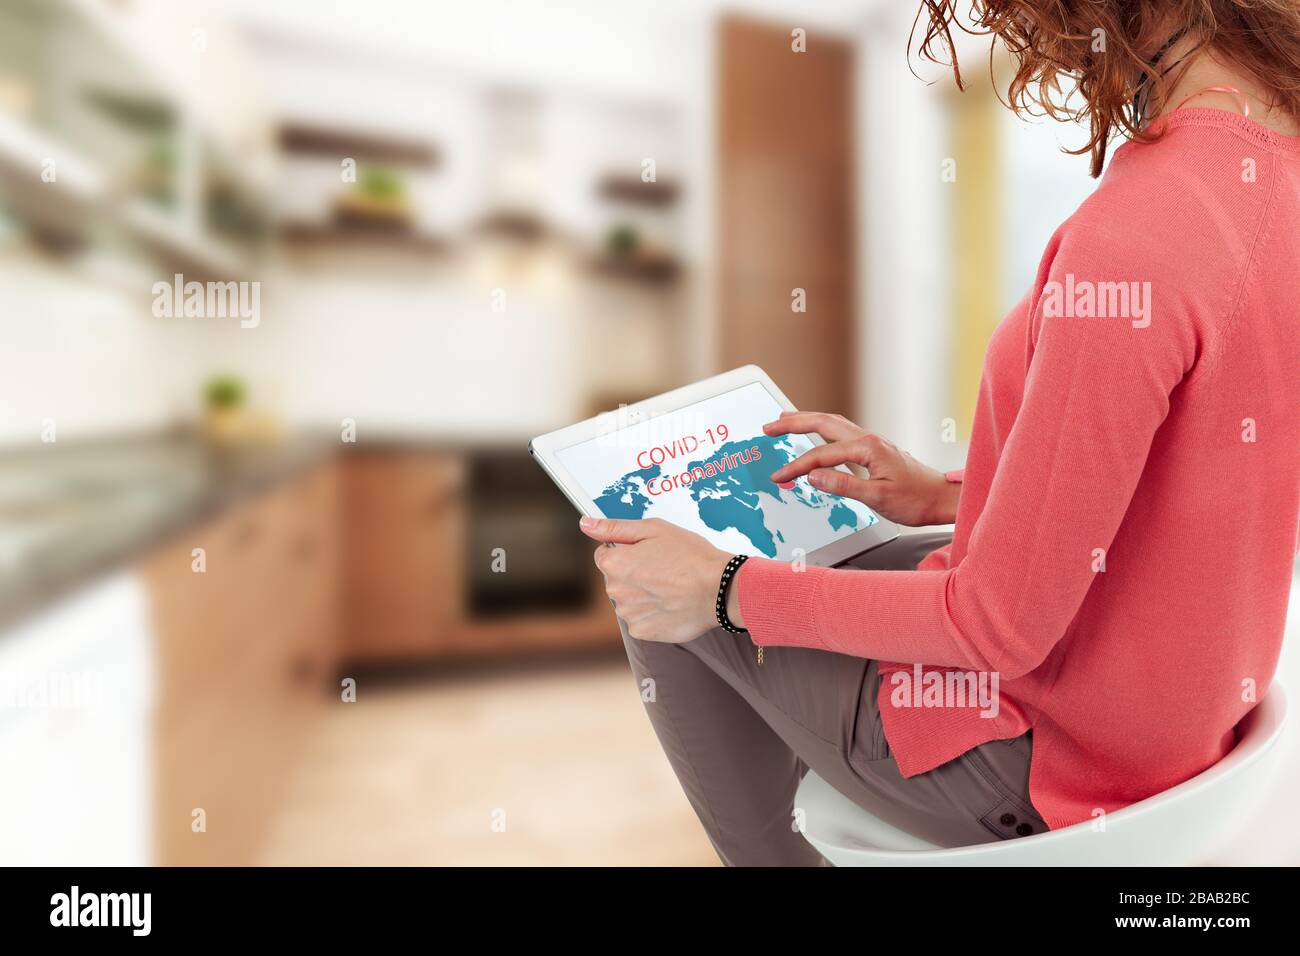 Une femme regarde dans un comprimé et regarde des informations pour le coronavirus. Banque D'Images